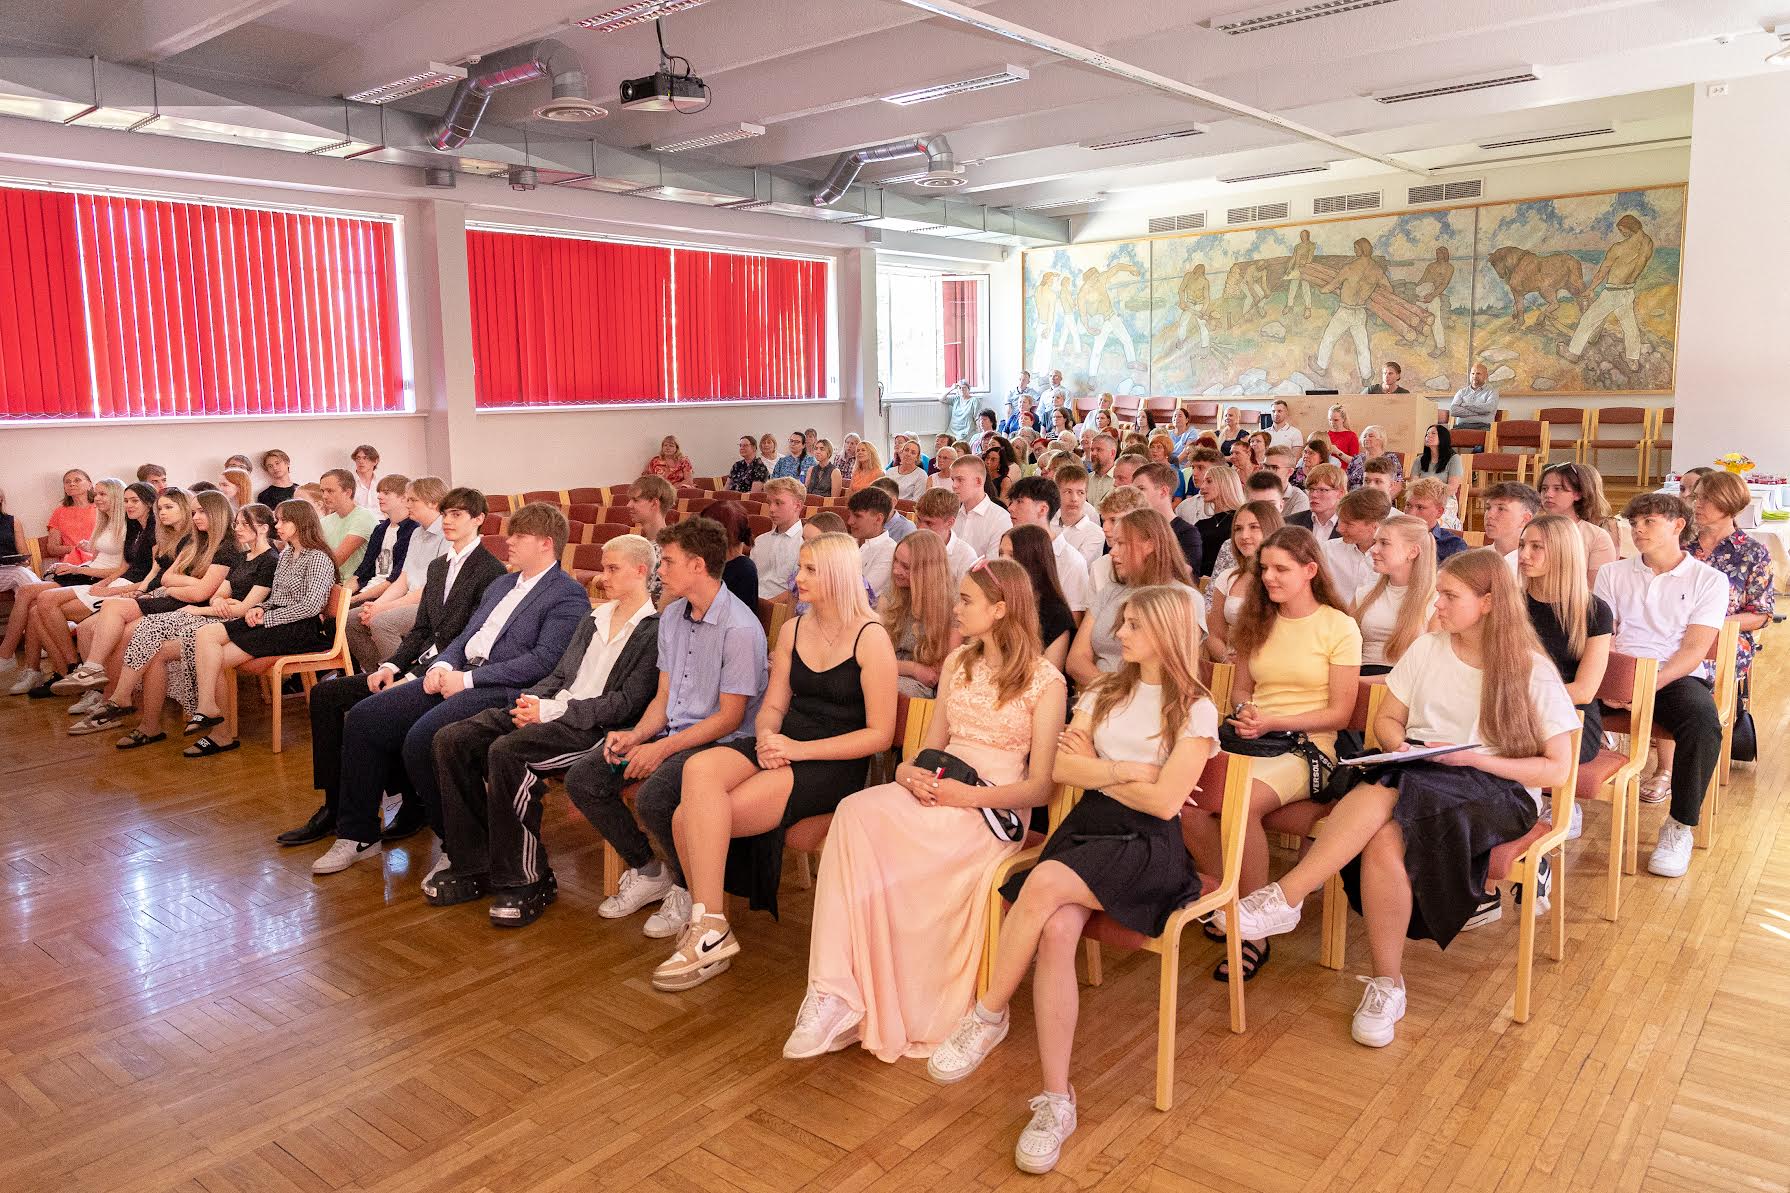 Kolme paralleelklassi 60 õpilast kogunes lõuna ajal aulasse aktusele. FOTO: Aigar Nagel